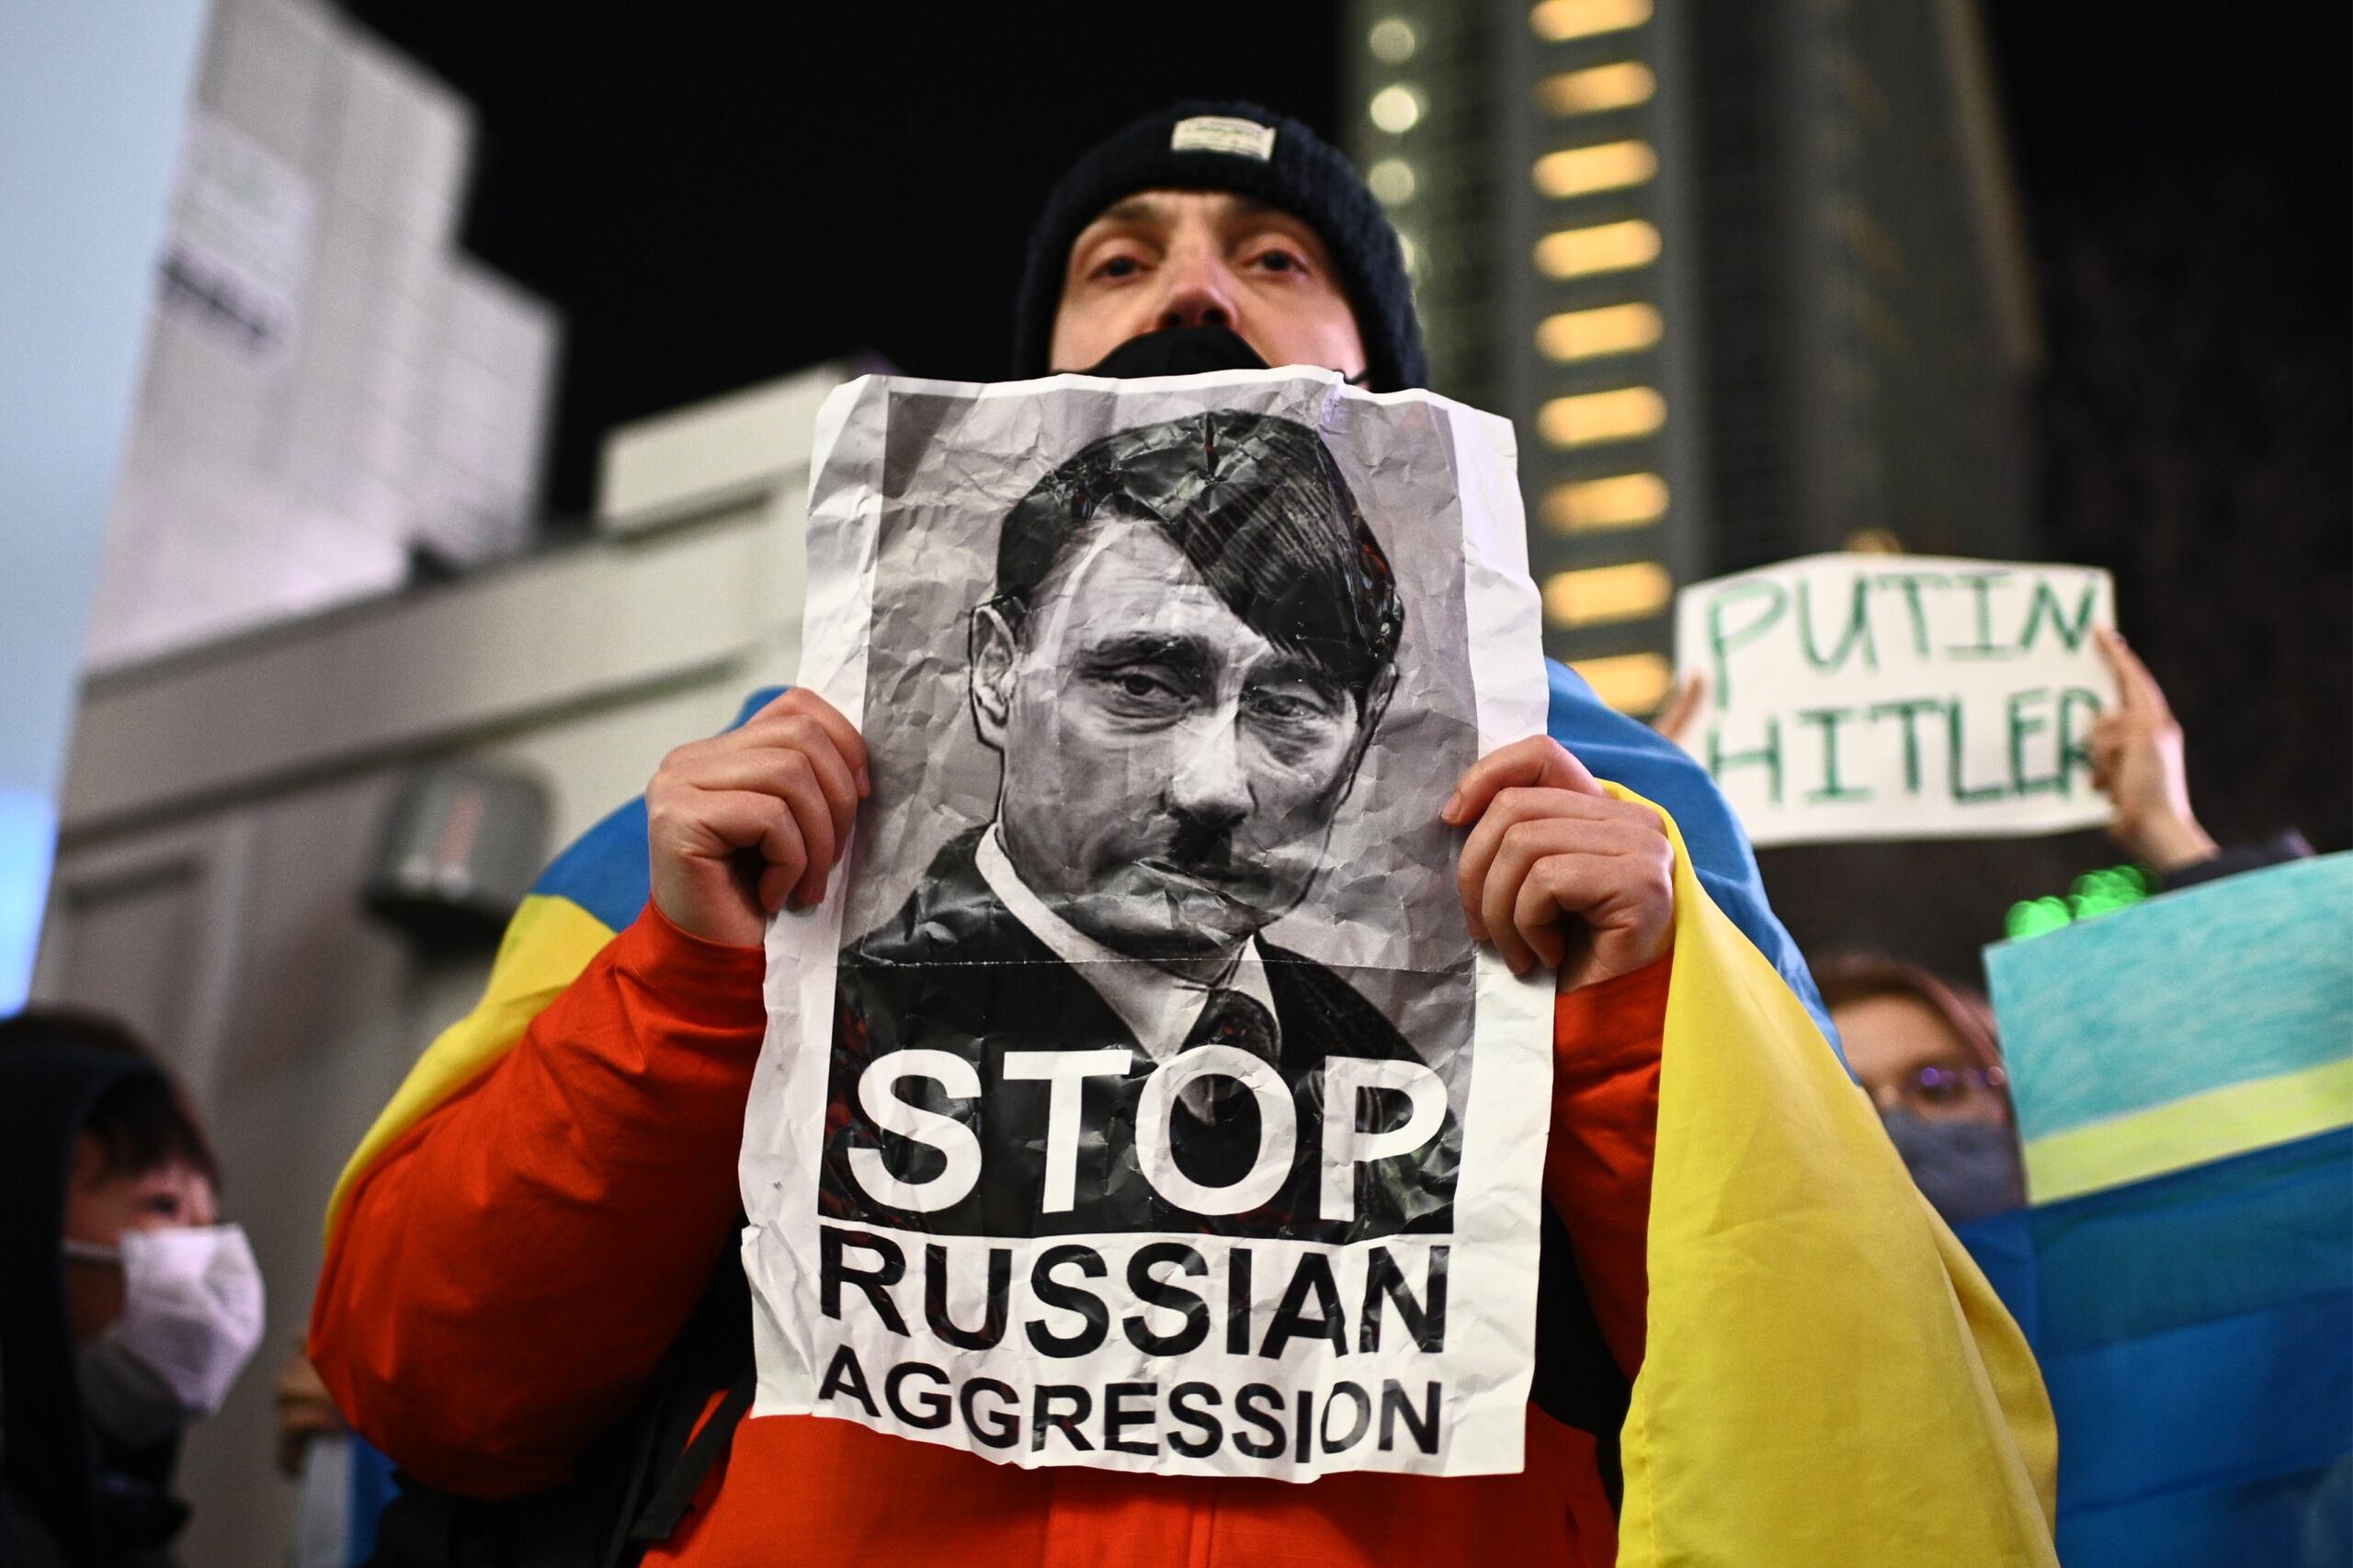 Na zdjęciu plakat z Putinem stylizowanym na Adolfa Hitlera